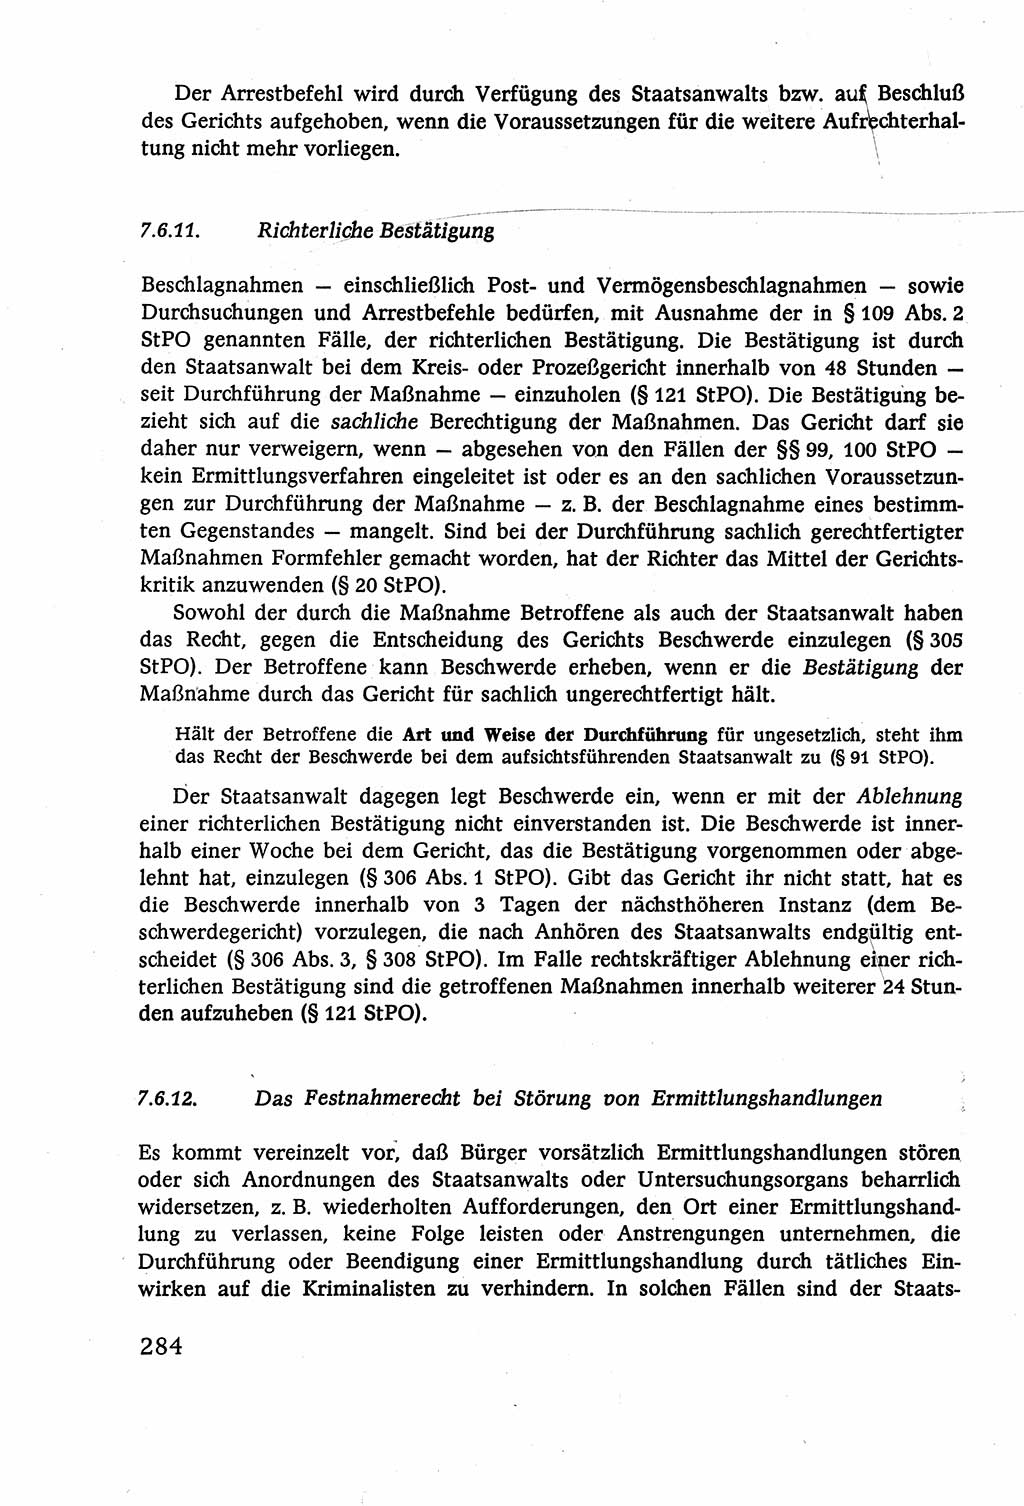 Strafverfahrensrecht [Deutsche Demokratische Republik (DDR)], Lehrbuch 1977, Seite 284 (Strafverf.-R. DDR Lb. 1977, S. 284)